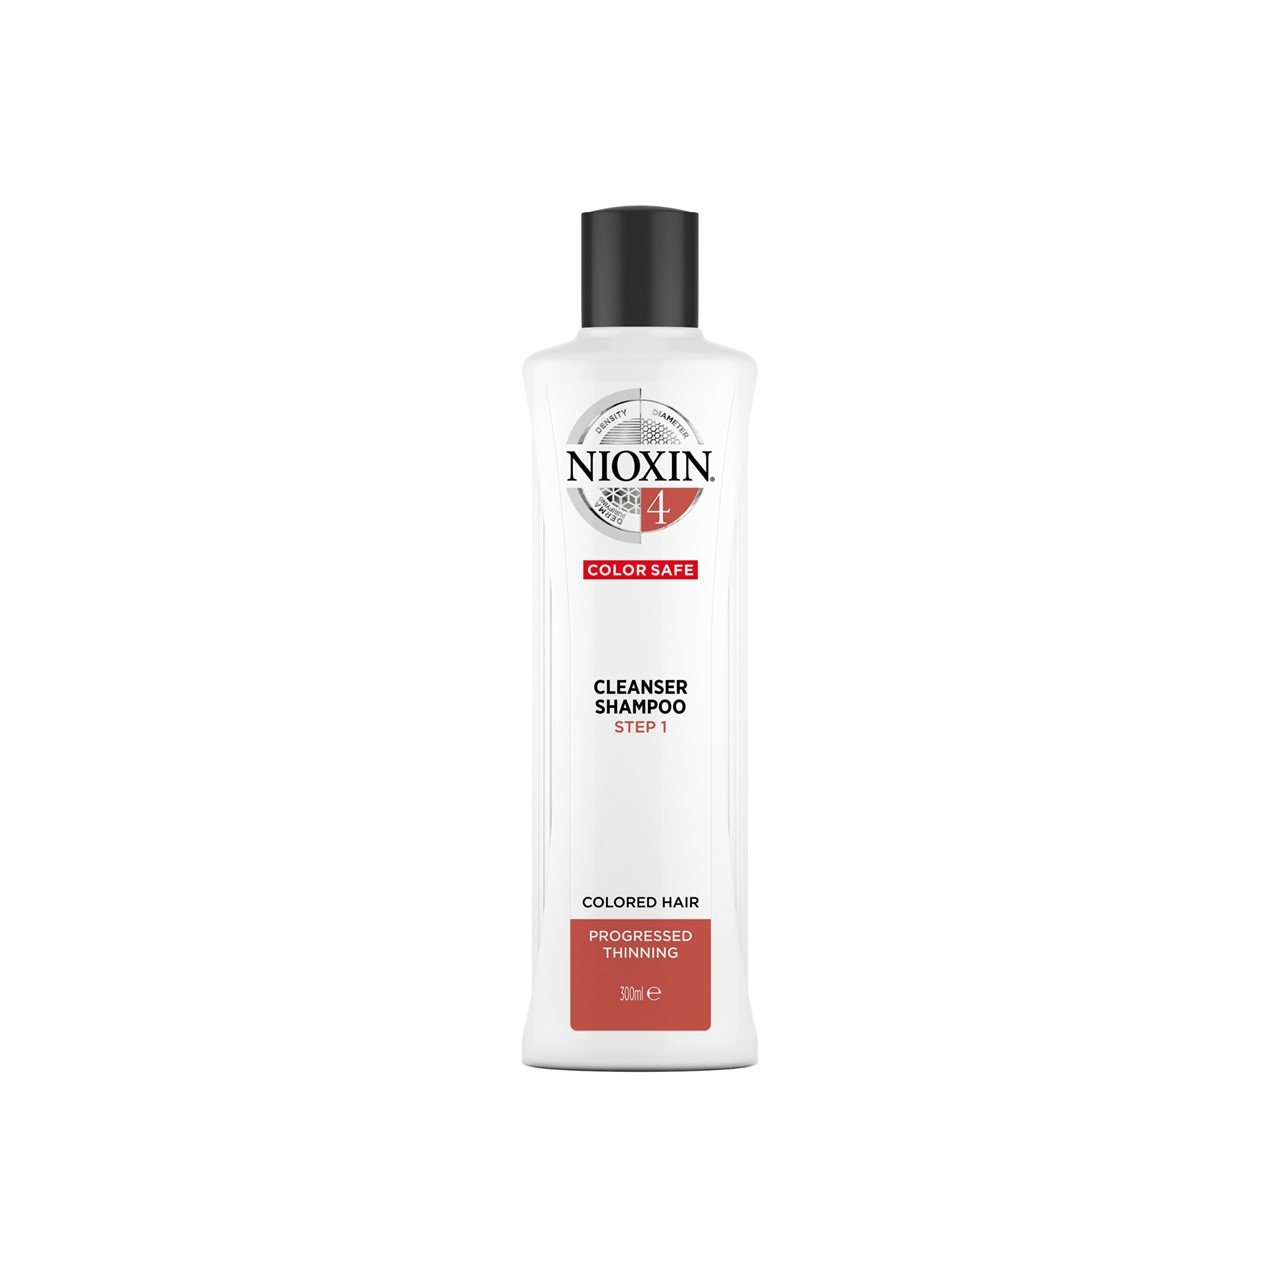 Nioxin System 4 Cleanser Shampoo 300ml (10.14fl oz)